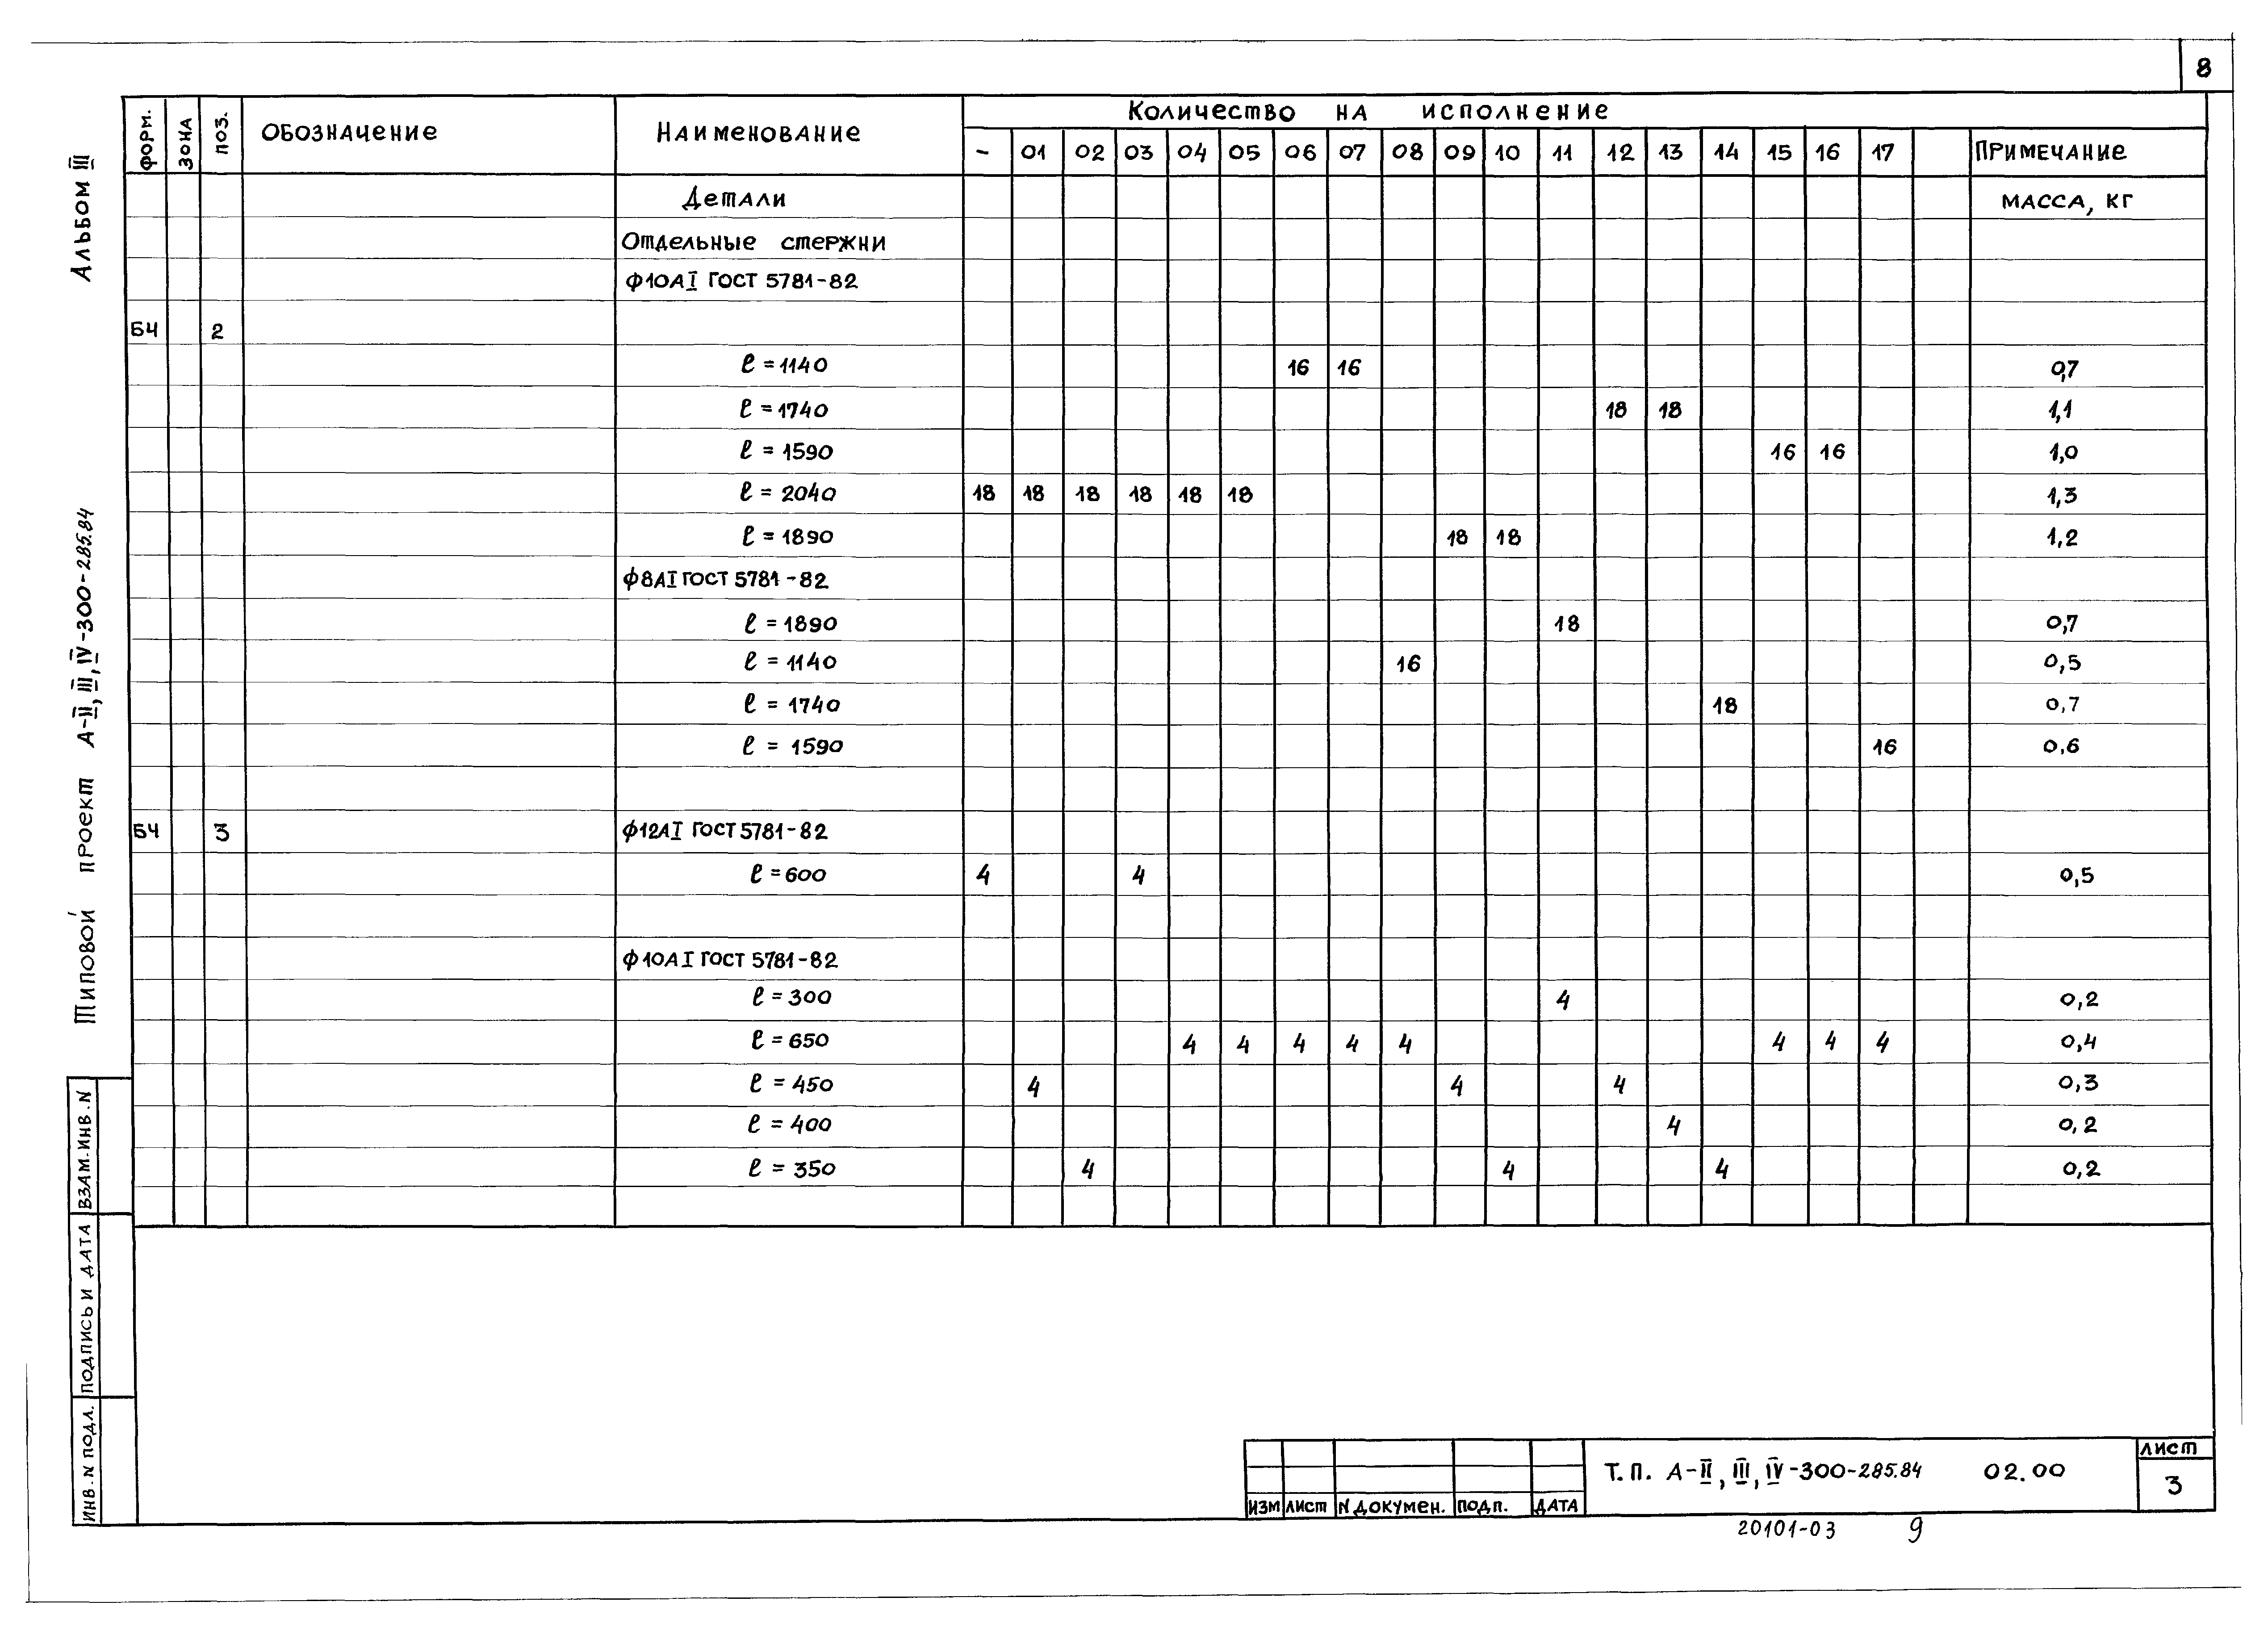 Типовой проект А-II,III,IV-300-285.84